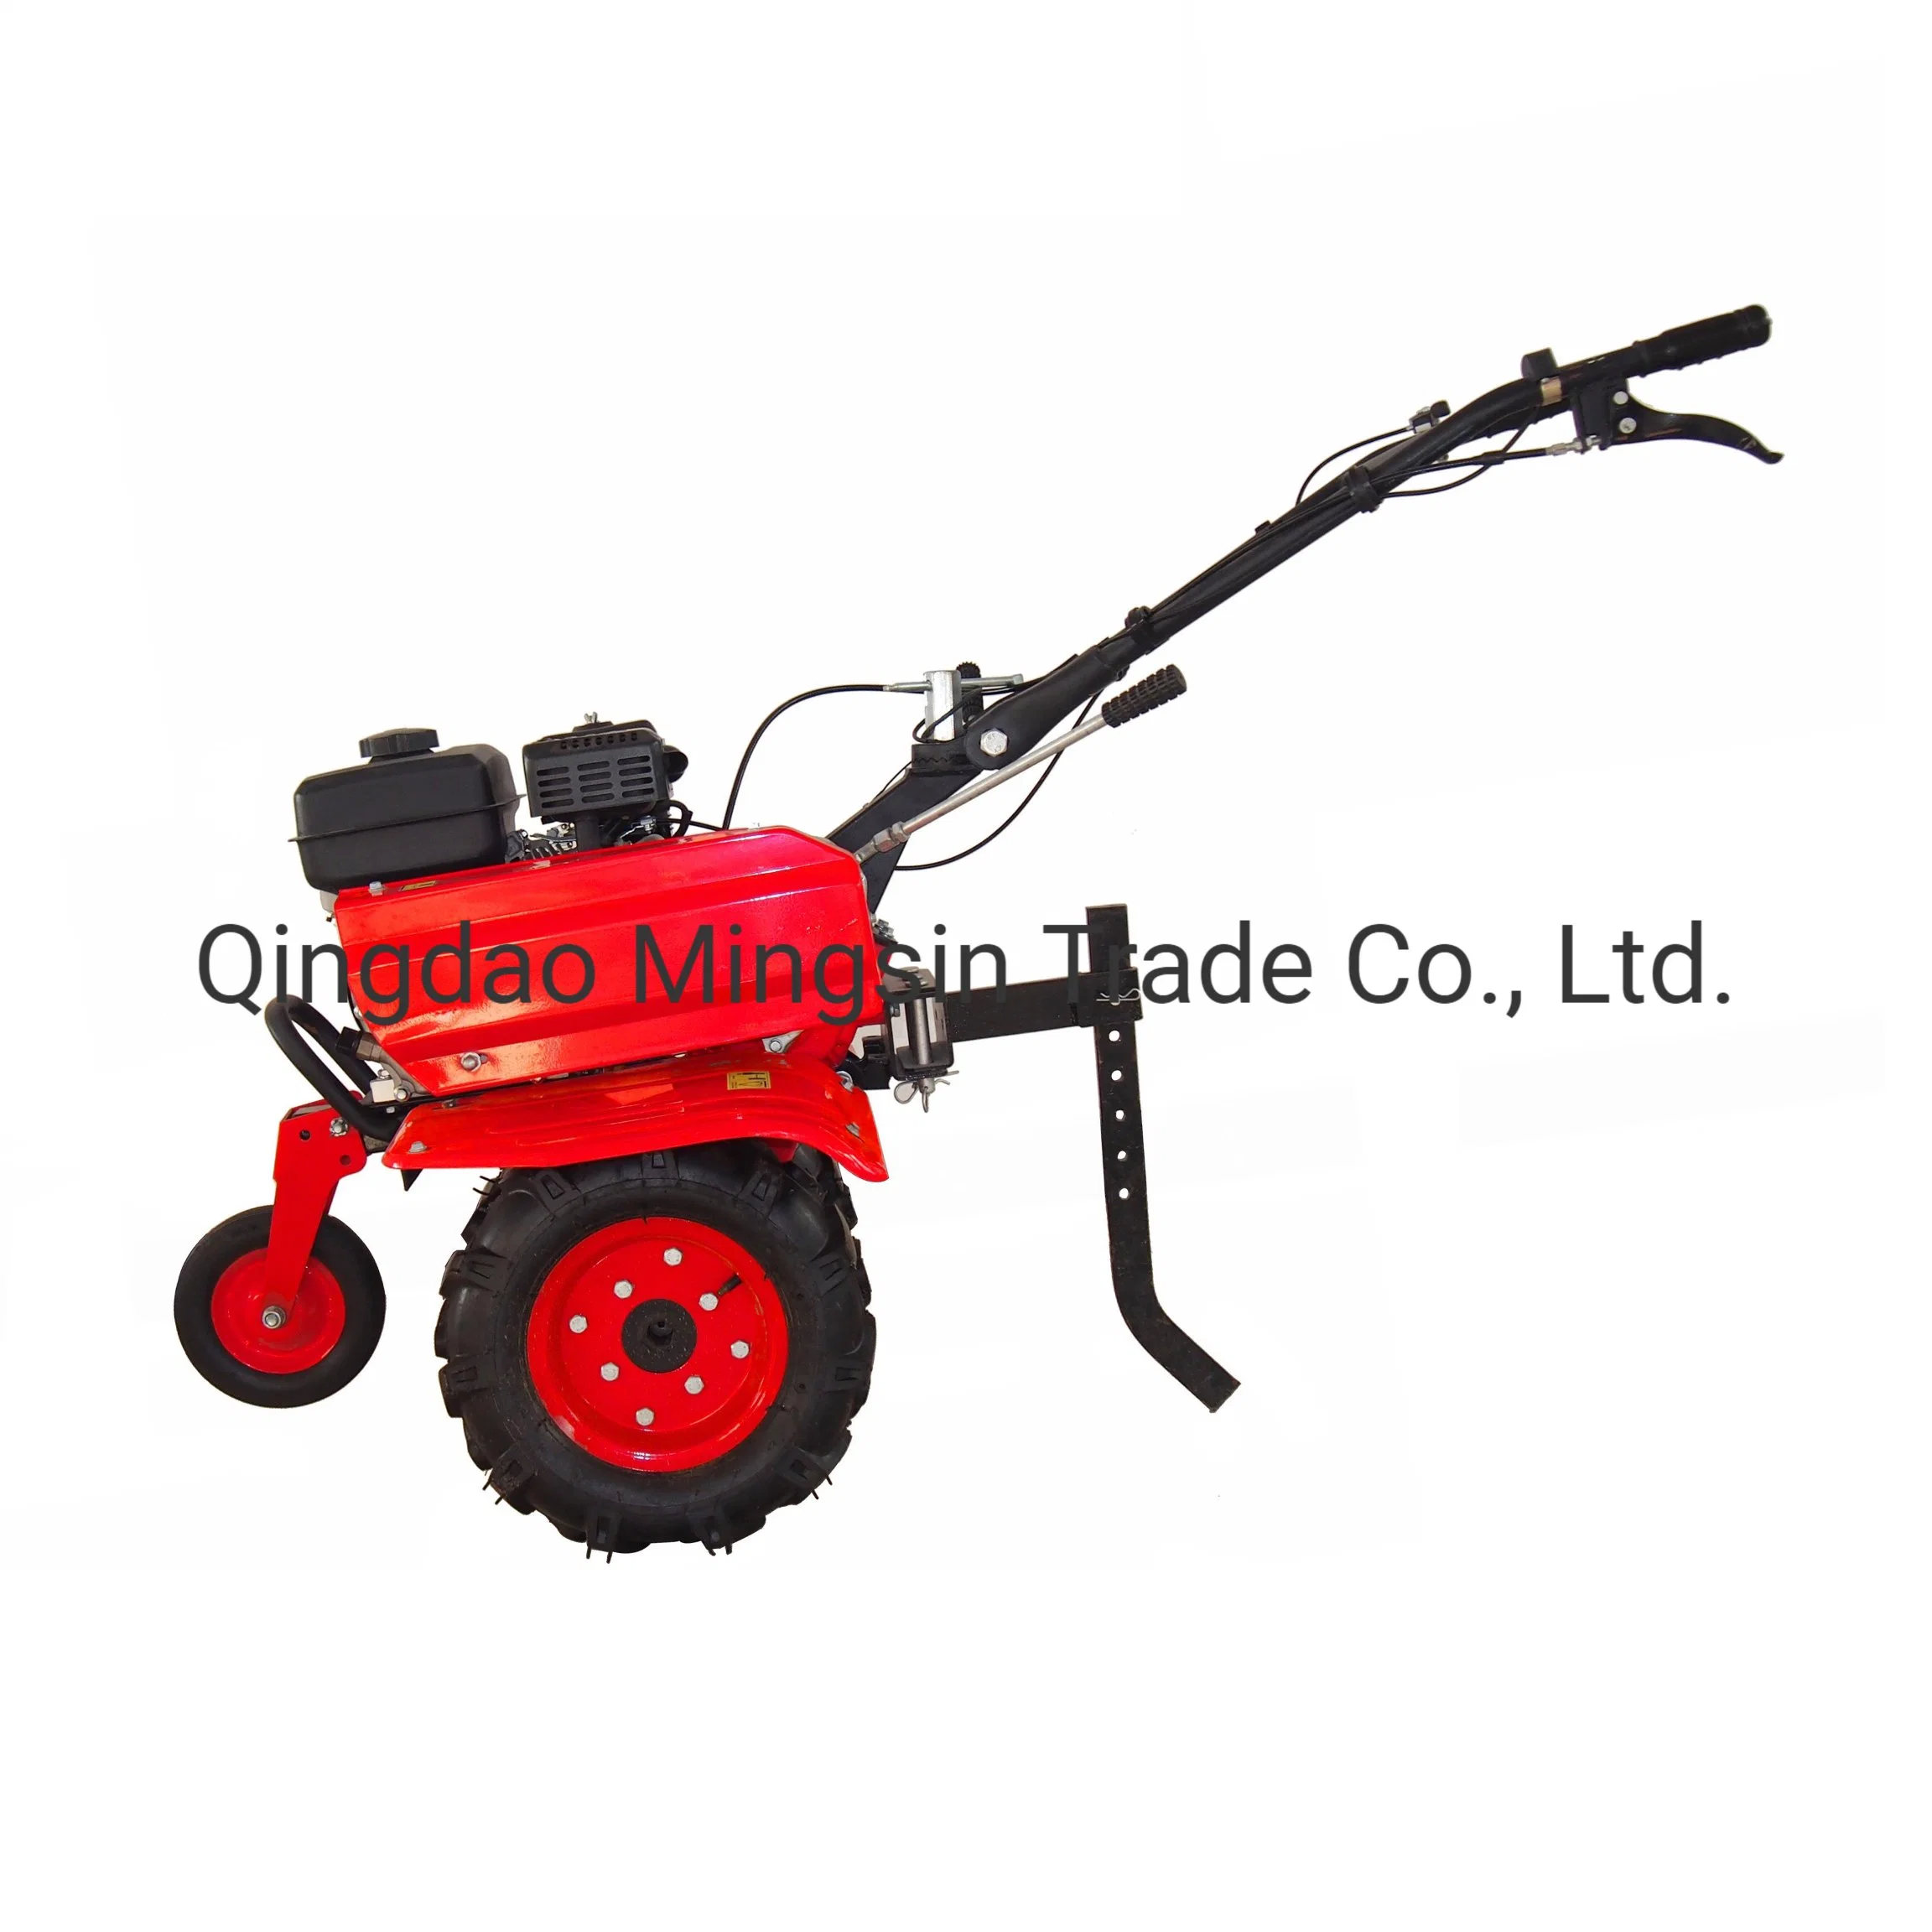 Landwirtschaftler, Grubber, Minischachser, Modell Gt500A/Gt900A